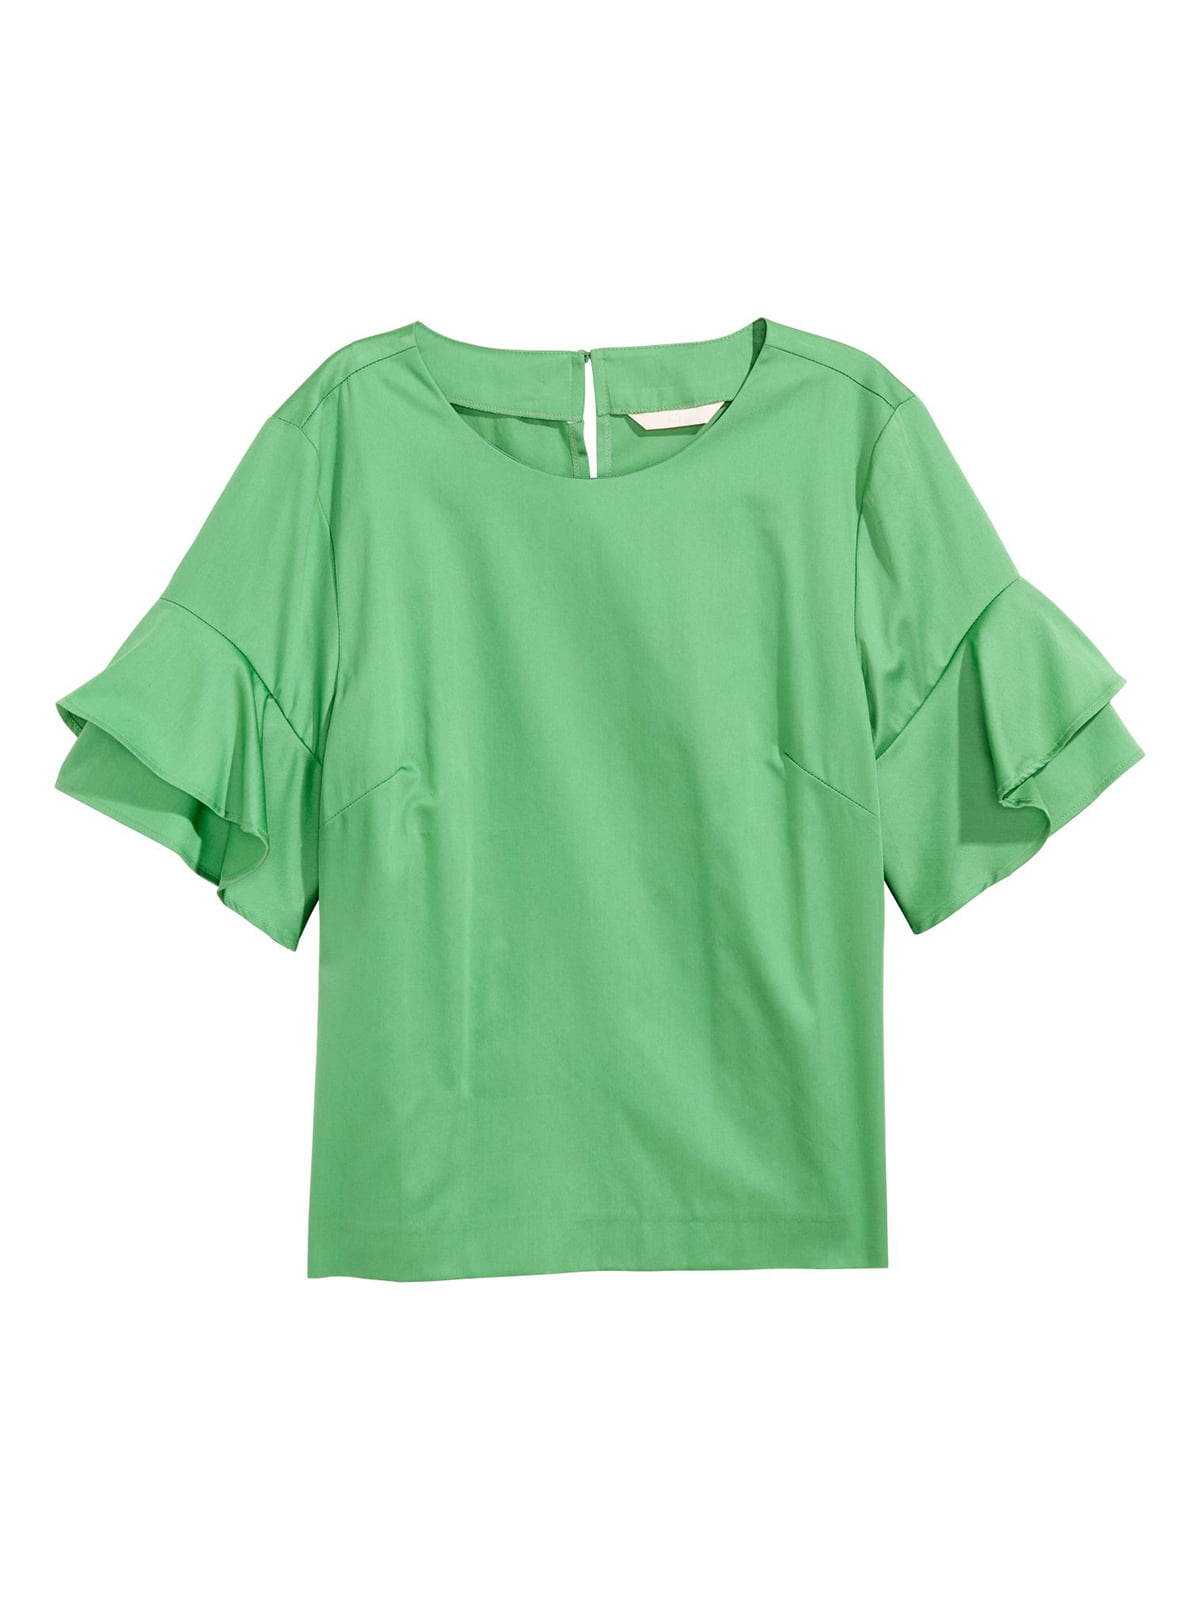 Блуза зеленая | 5926029